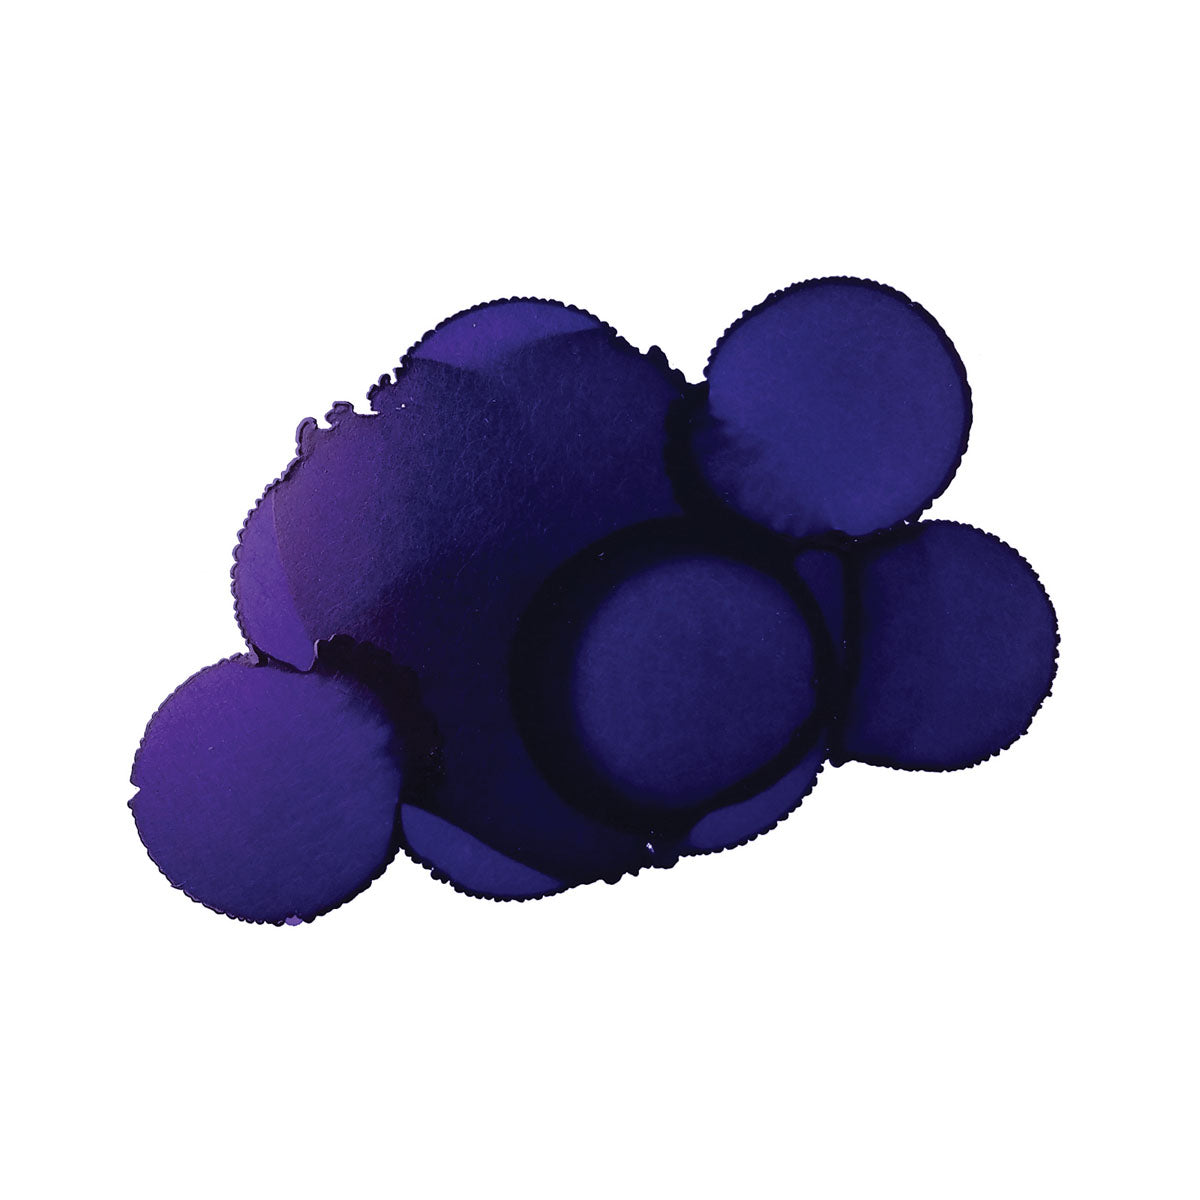 Jacquard - Pinata Inchiostri Alcool 1-2oz 15ml - Passion Purple 013